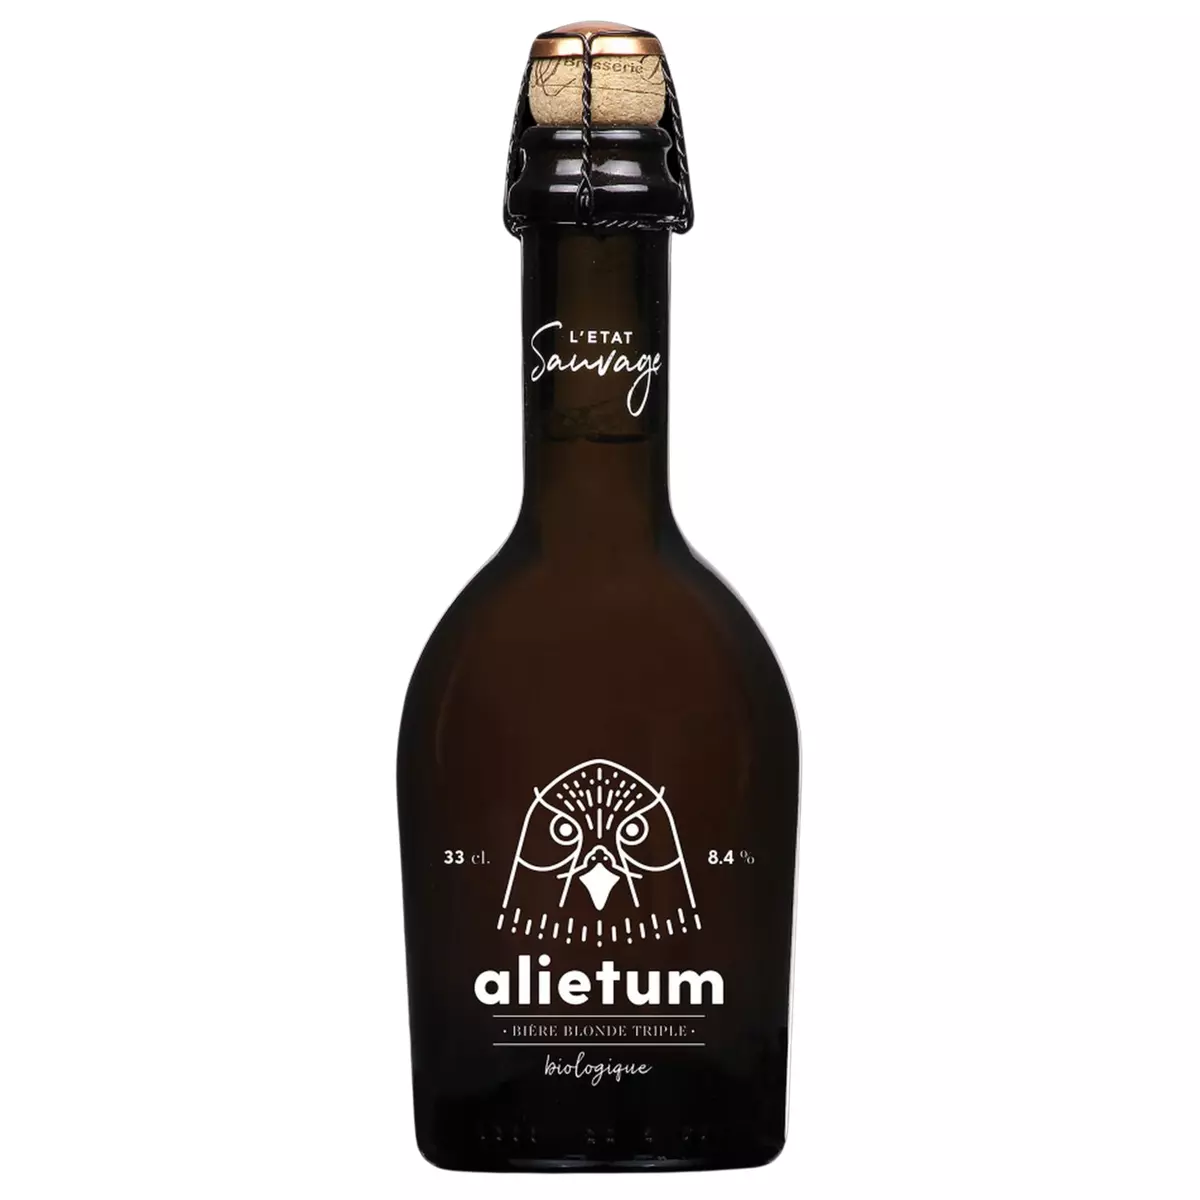 L'ETAT SAUVAGE Bière blonde triple bio alietum 8.4% bouteille 33cl